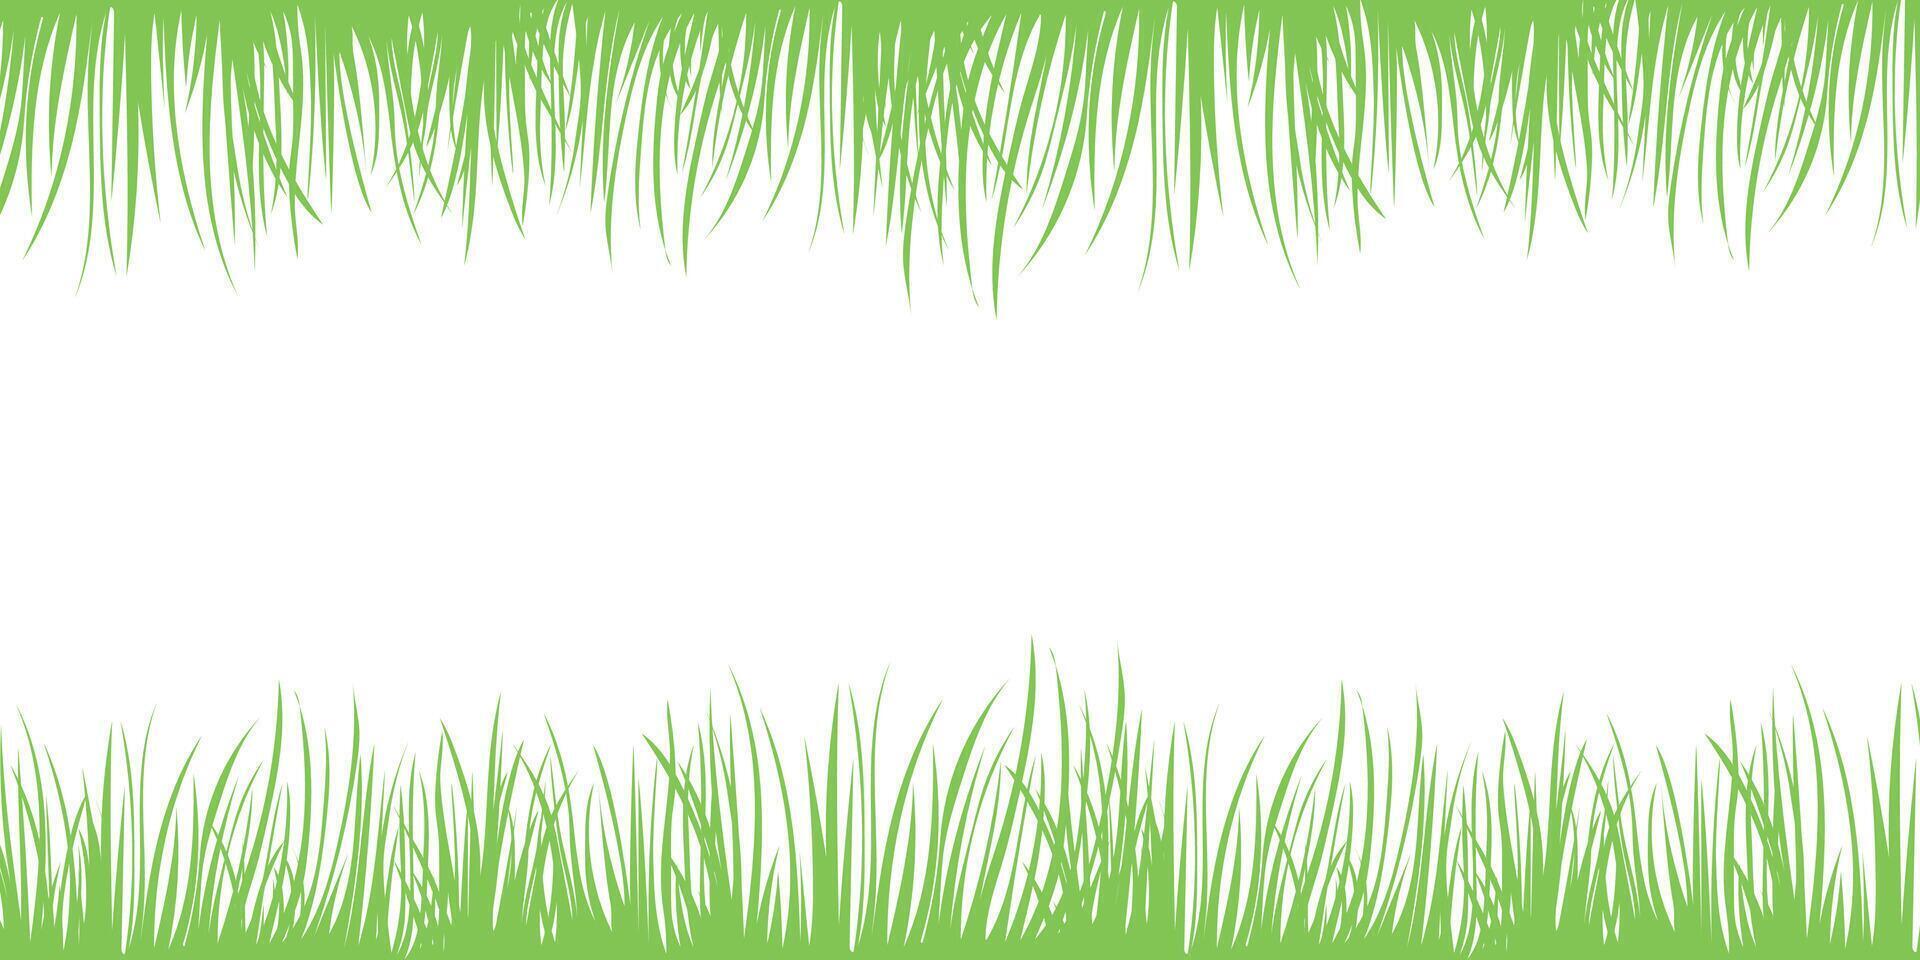 groen voorjaar achtergrond met plaats voor tekst. gras grens, vector illustratie.